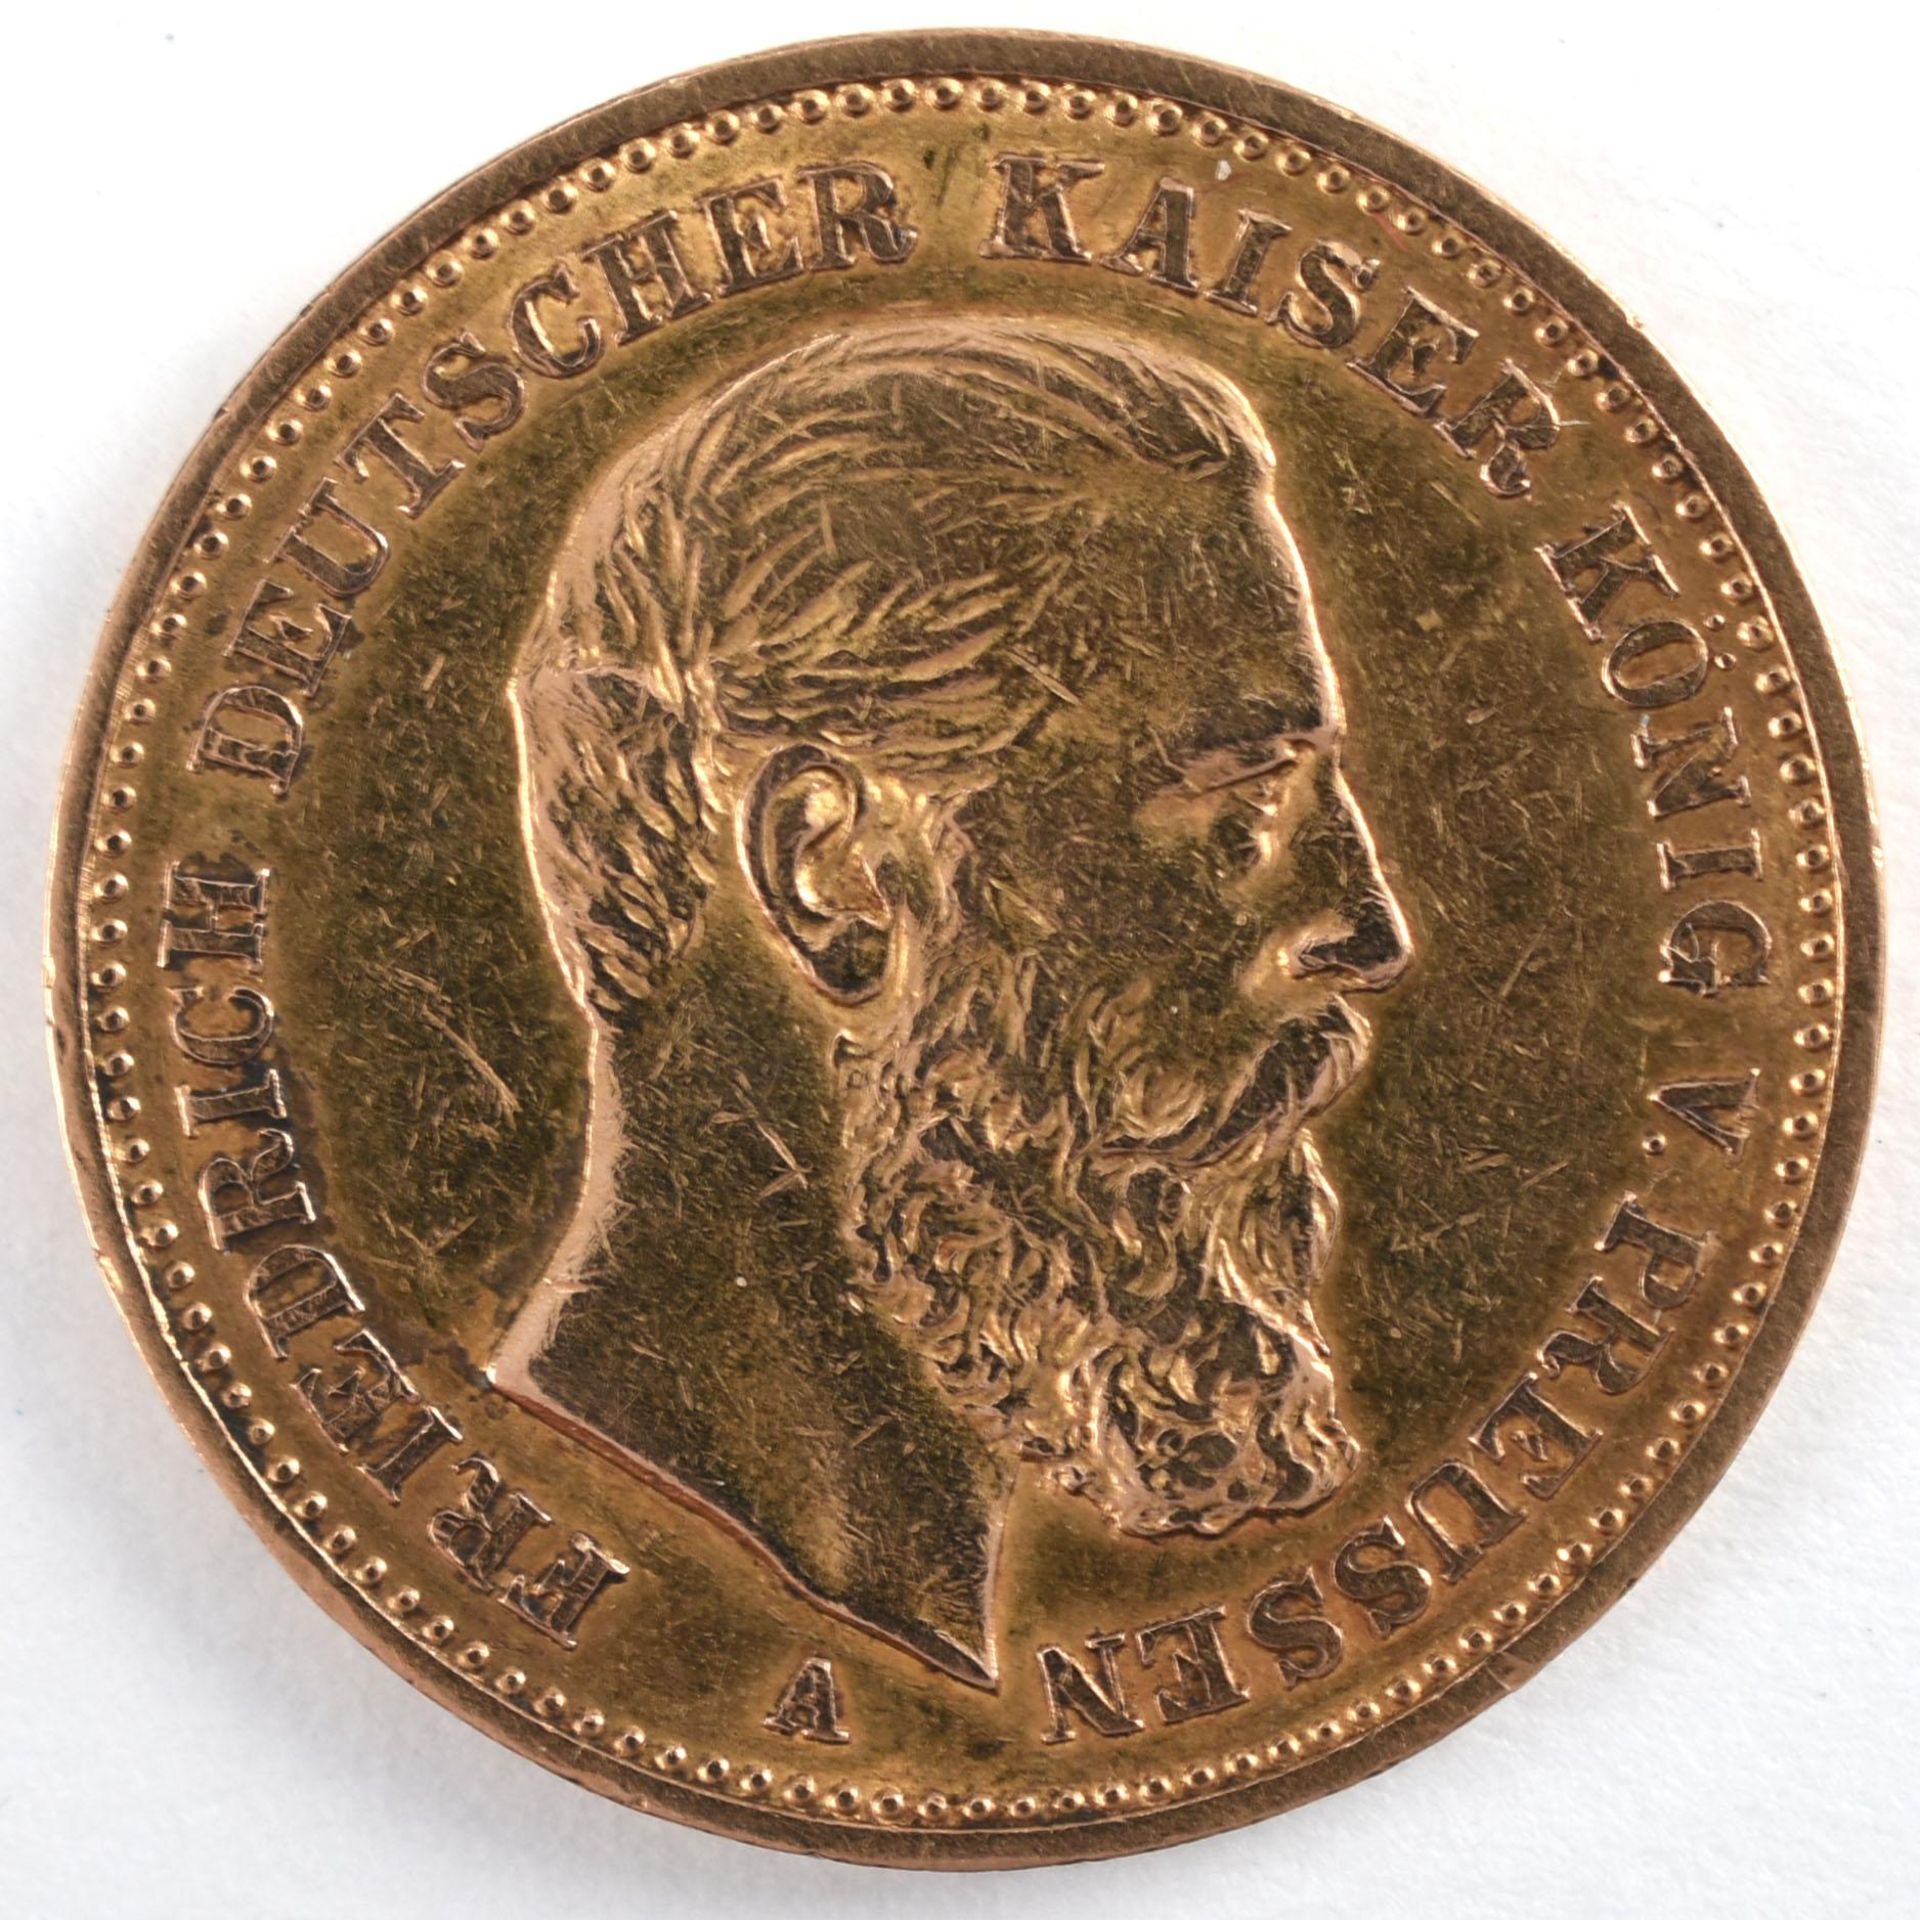 Goldmünze Preußen 1888 20 Mark in Gold, 900/1000, 7,96 g, D ca. 22,5 mm, av. Friedrich Deutscher - Bild 2 aus 3